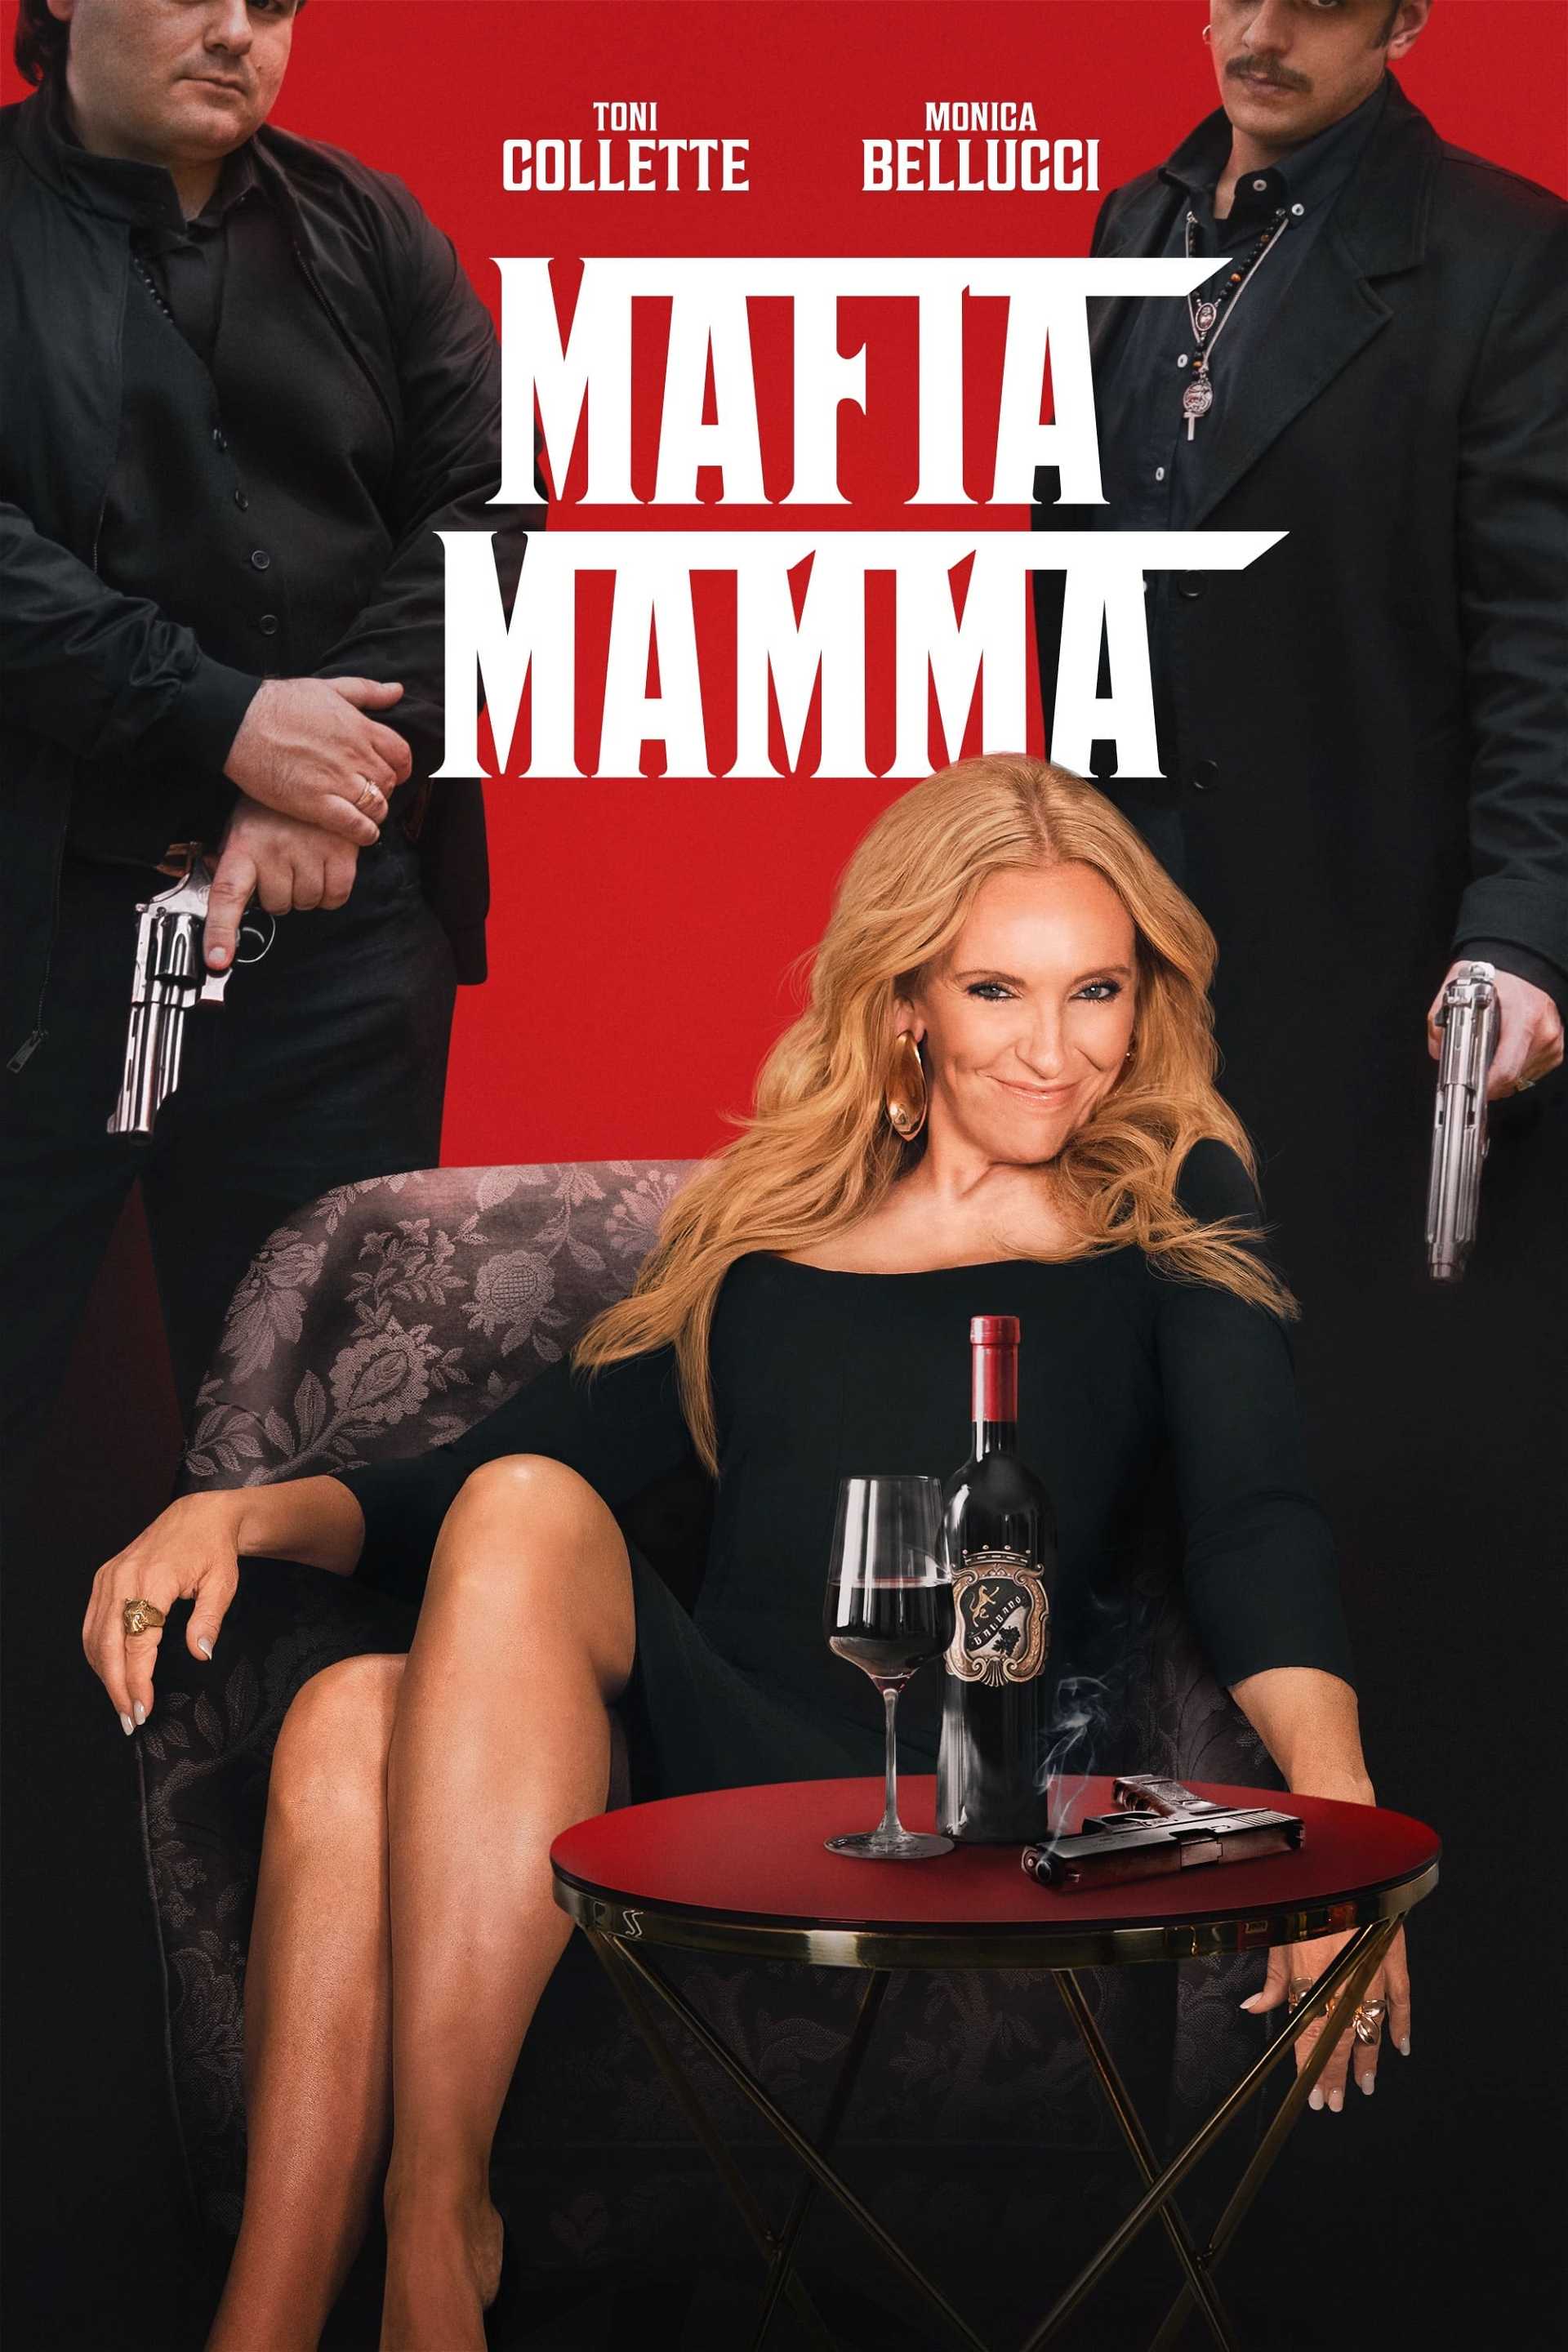 Mafia Mamma in streaming